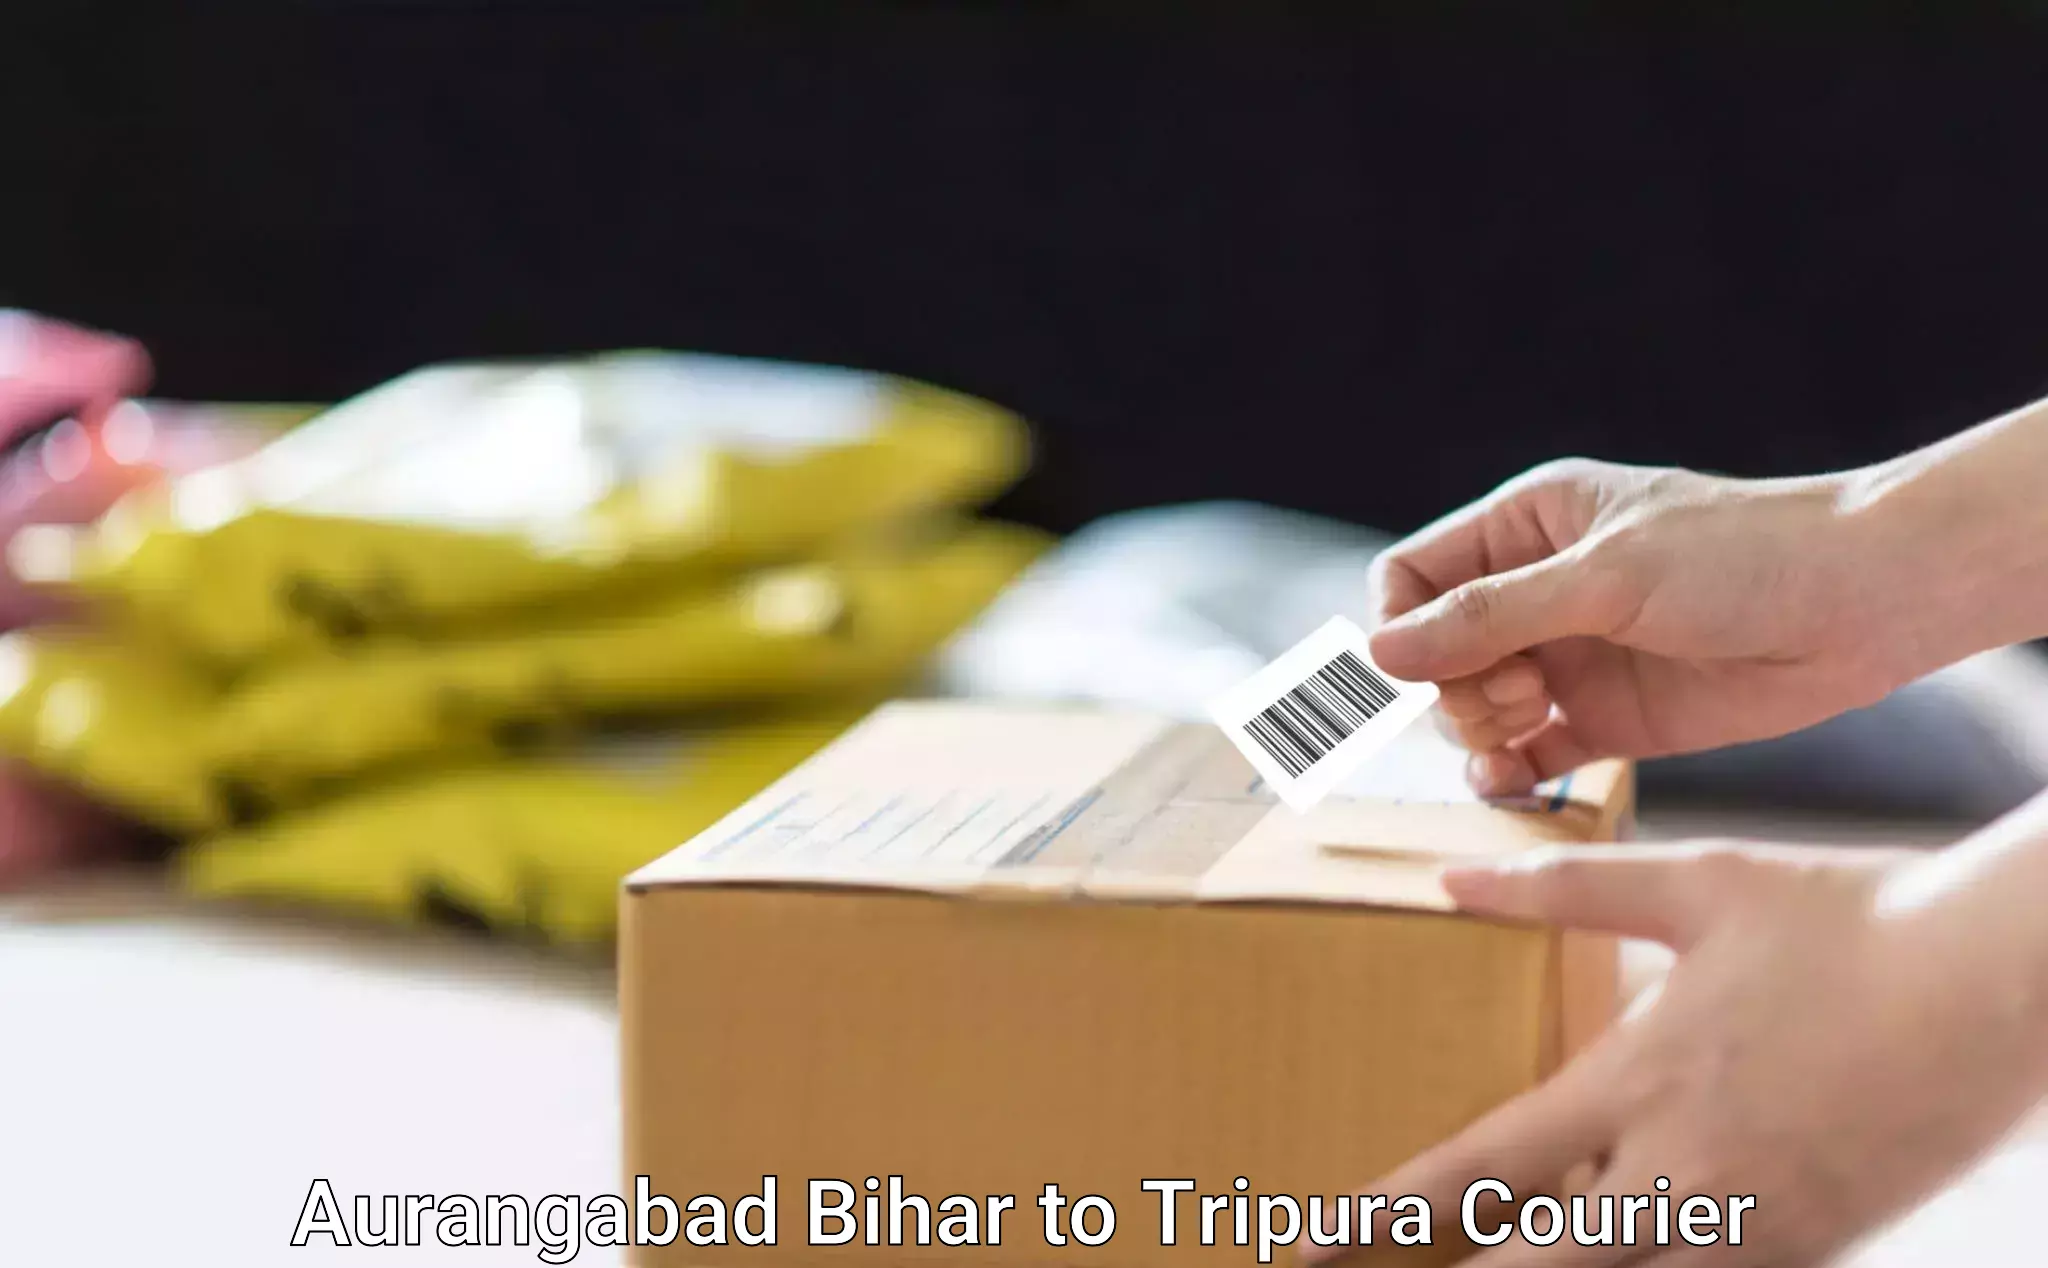 Budget-friendly movers in Aurangabad Bihar to IIIT Agartala